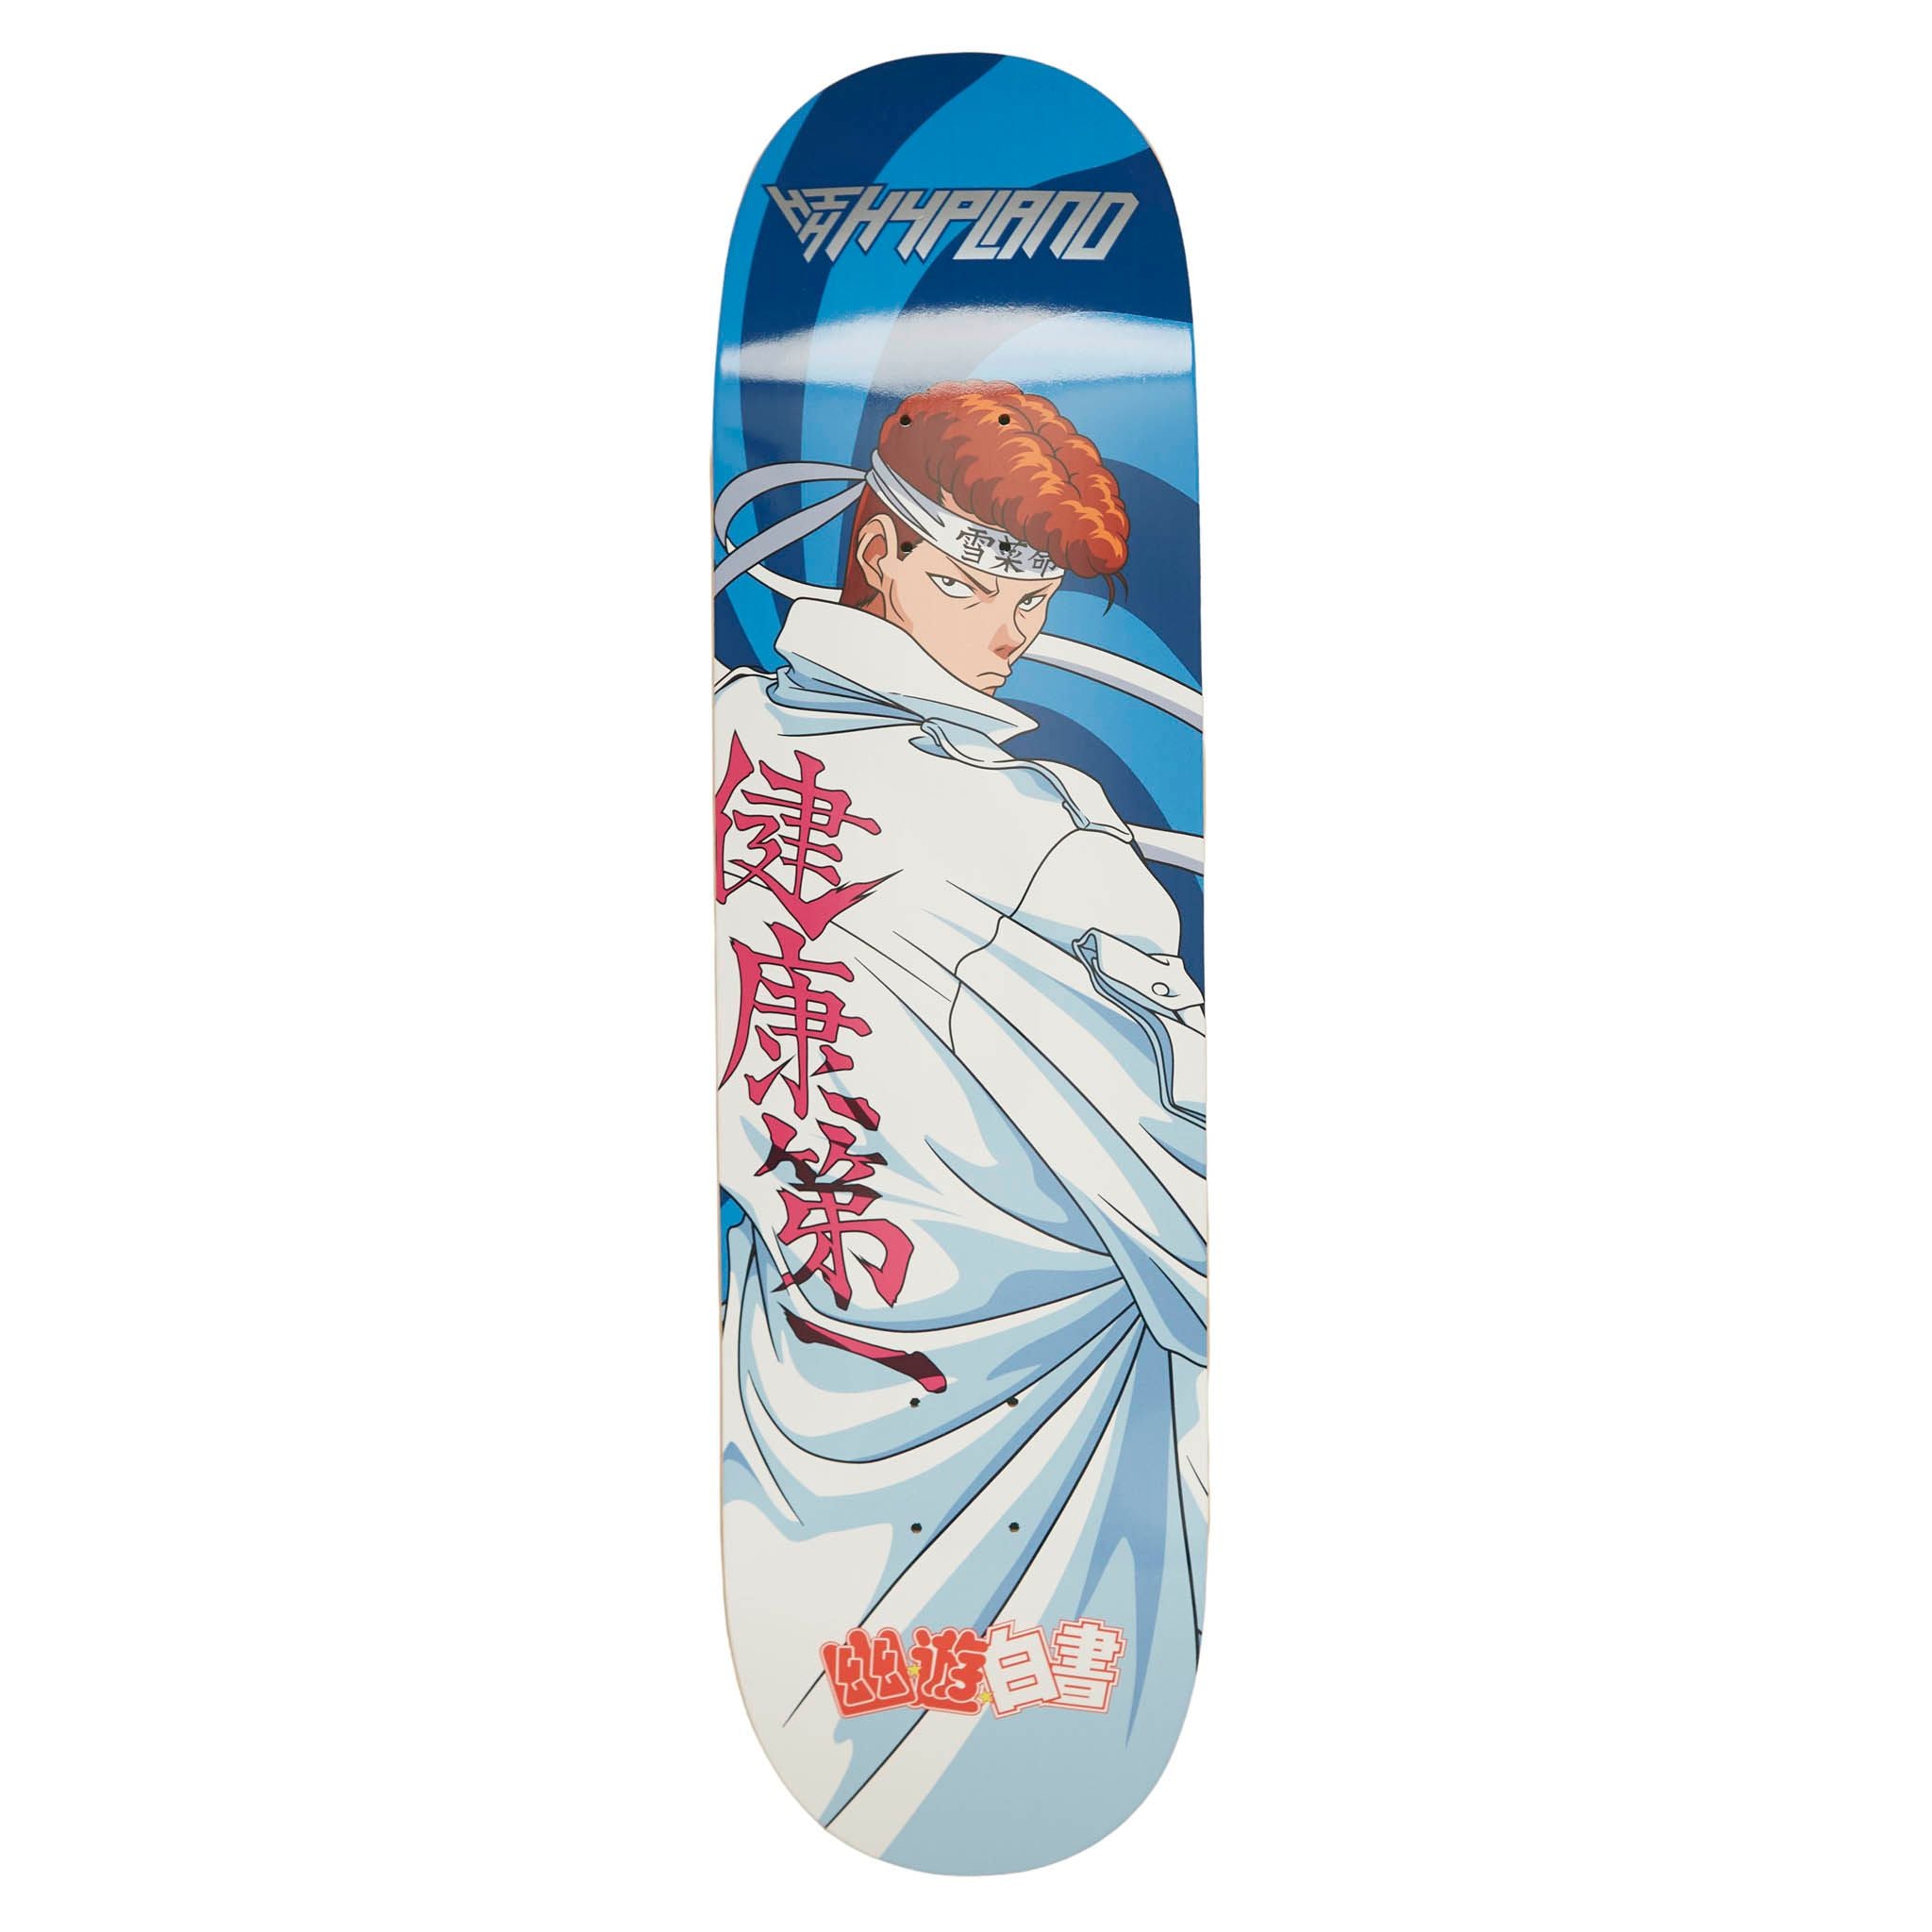 A cute anime girl with a skateboard. - Anime Girls - Sticker | TeePublic